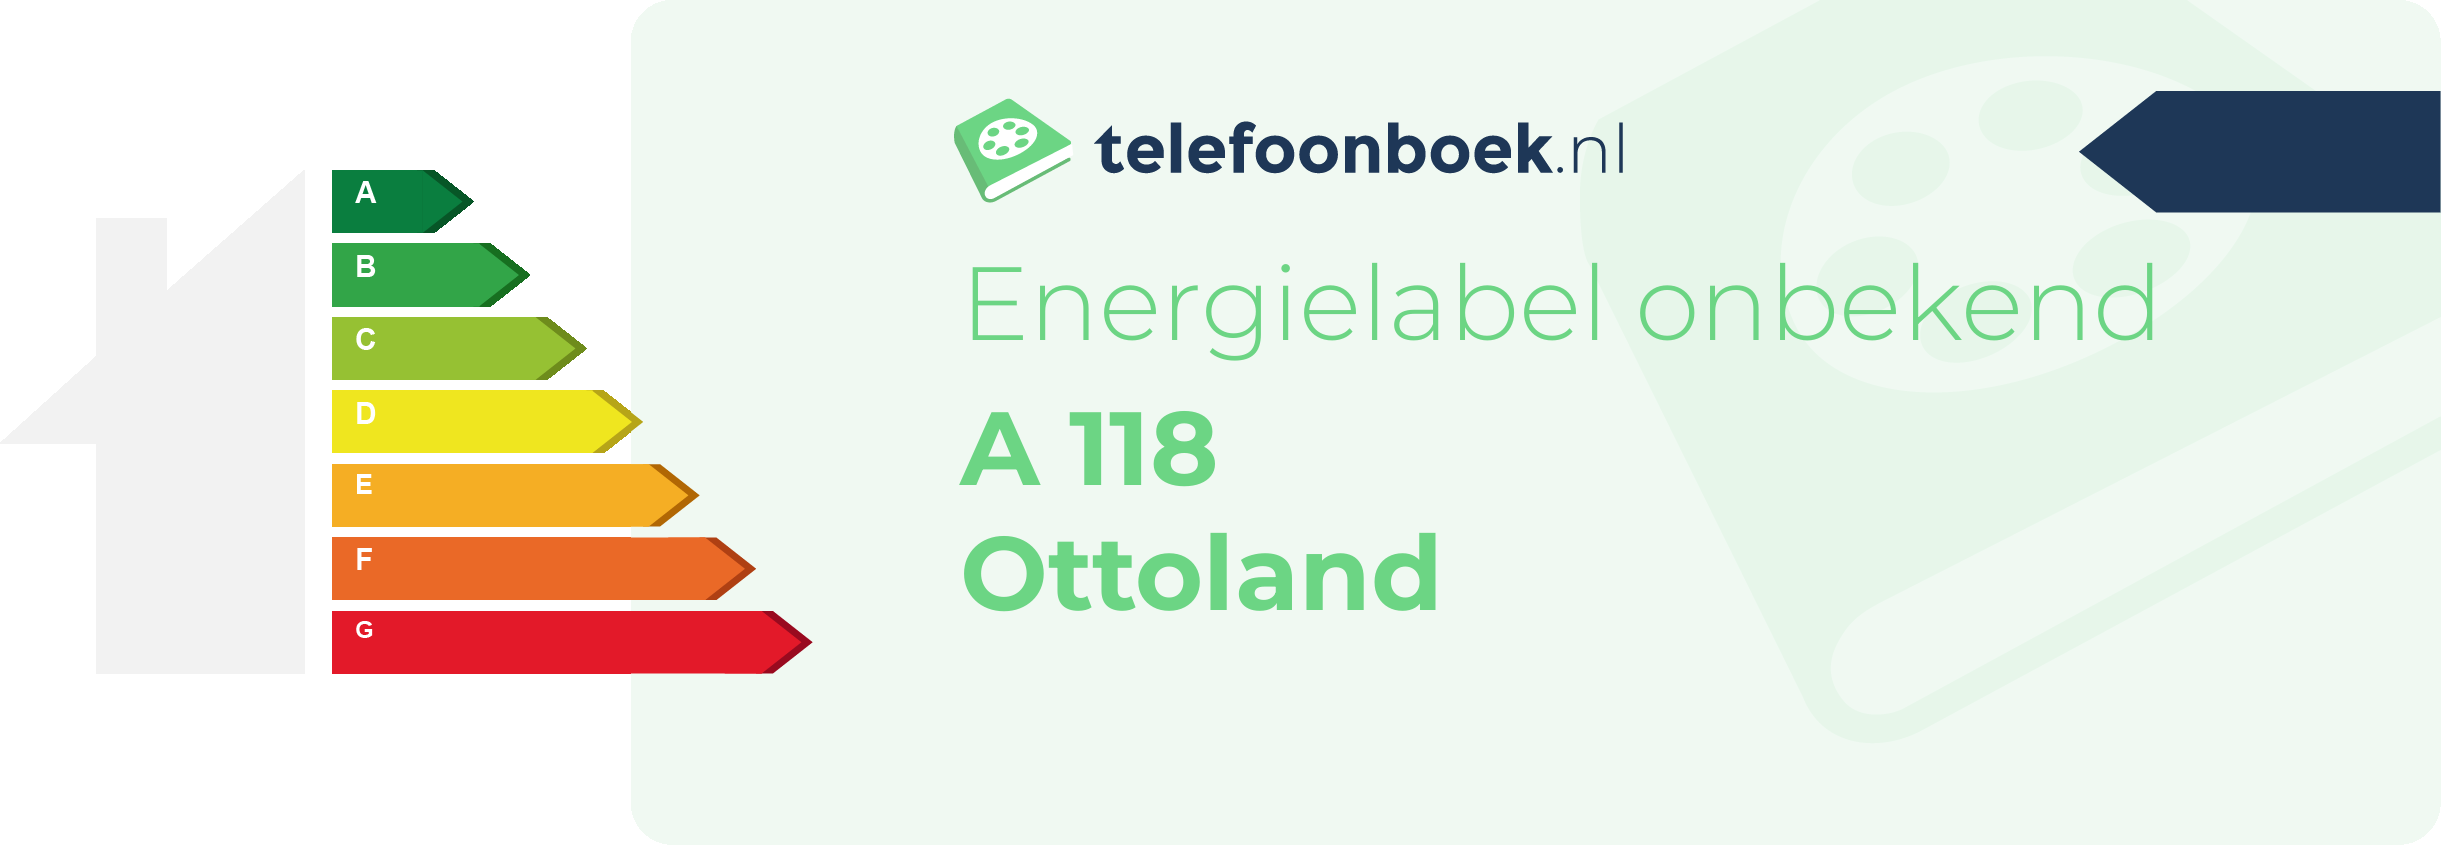 Energielabel A 118 Ottoland